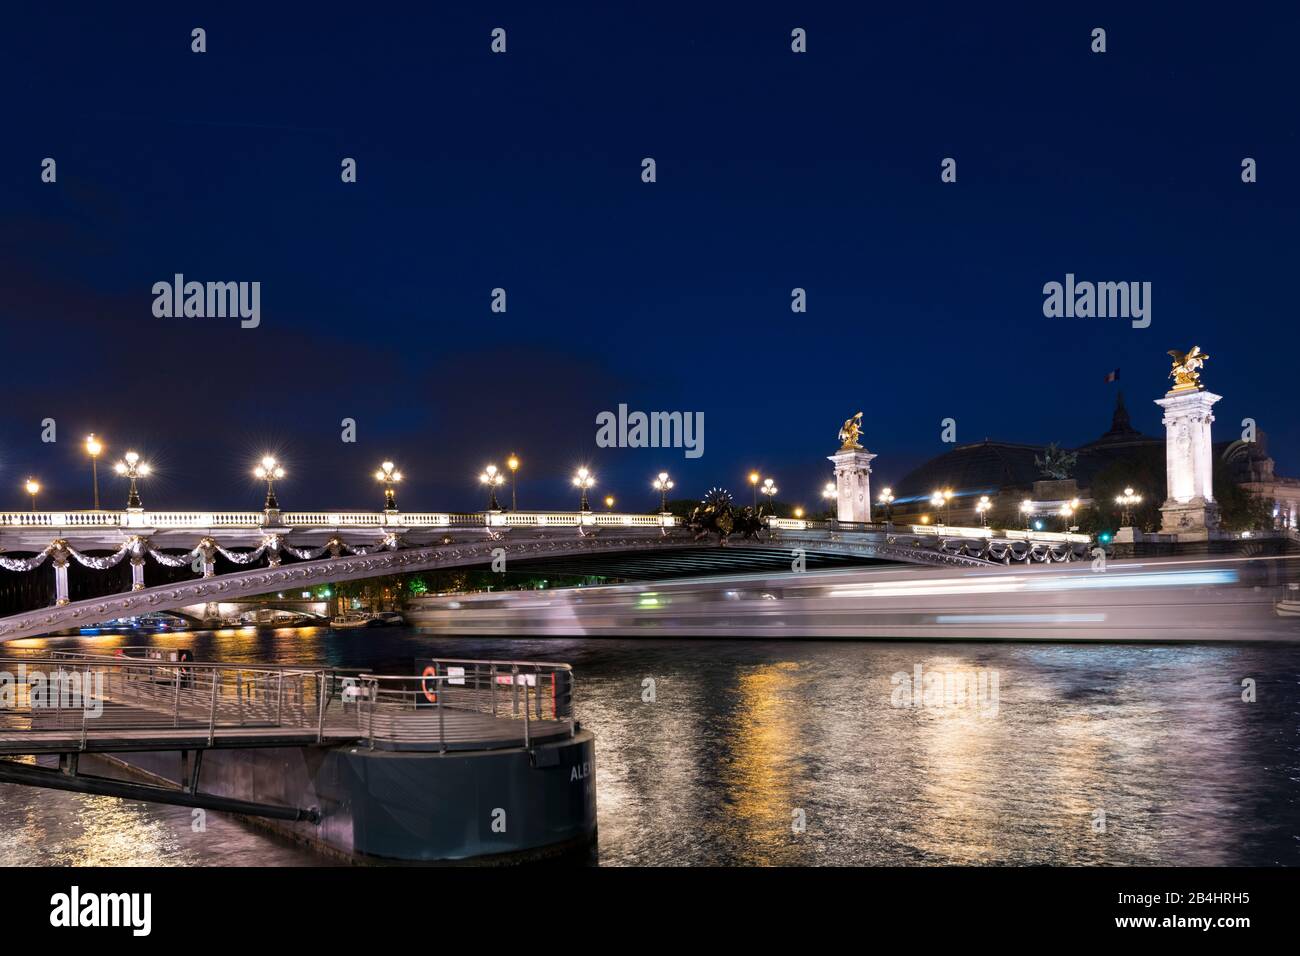 die nachts erleuchtende Brücke Pont Alexandre III unter der ein Ausflusschiff hindurch fährt und eine Lichtspur hinterläßt, Paris, Frankreich, Europa Stock Photo